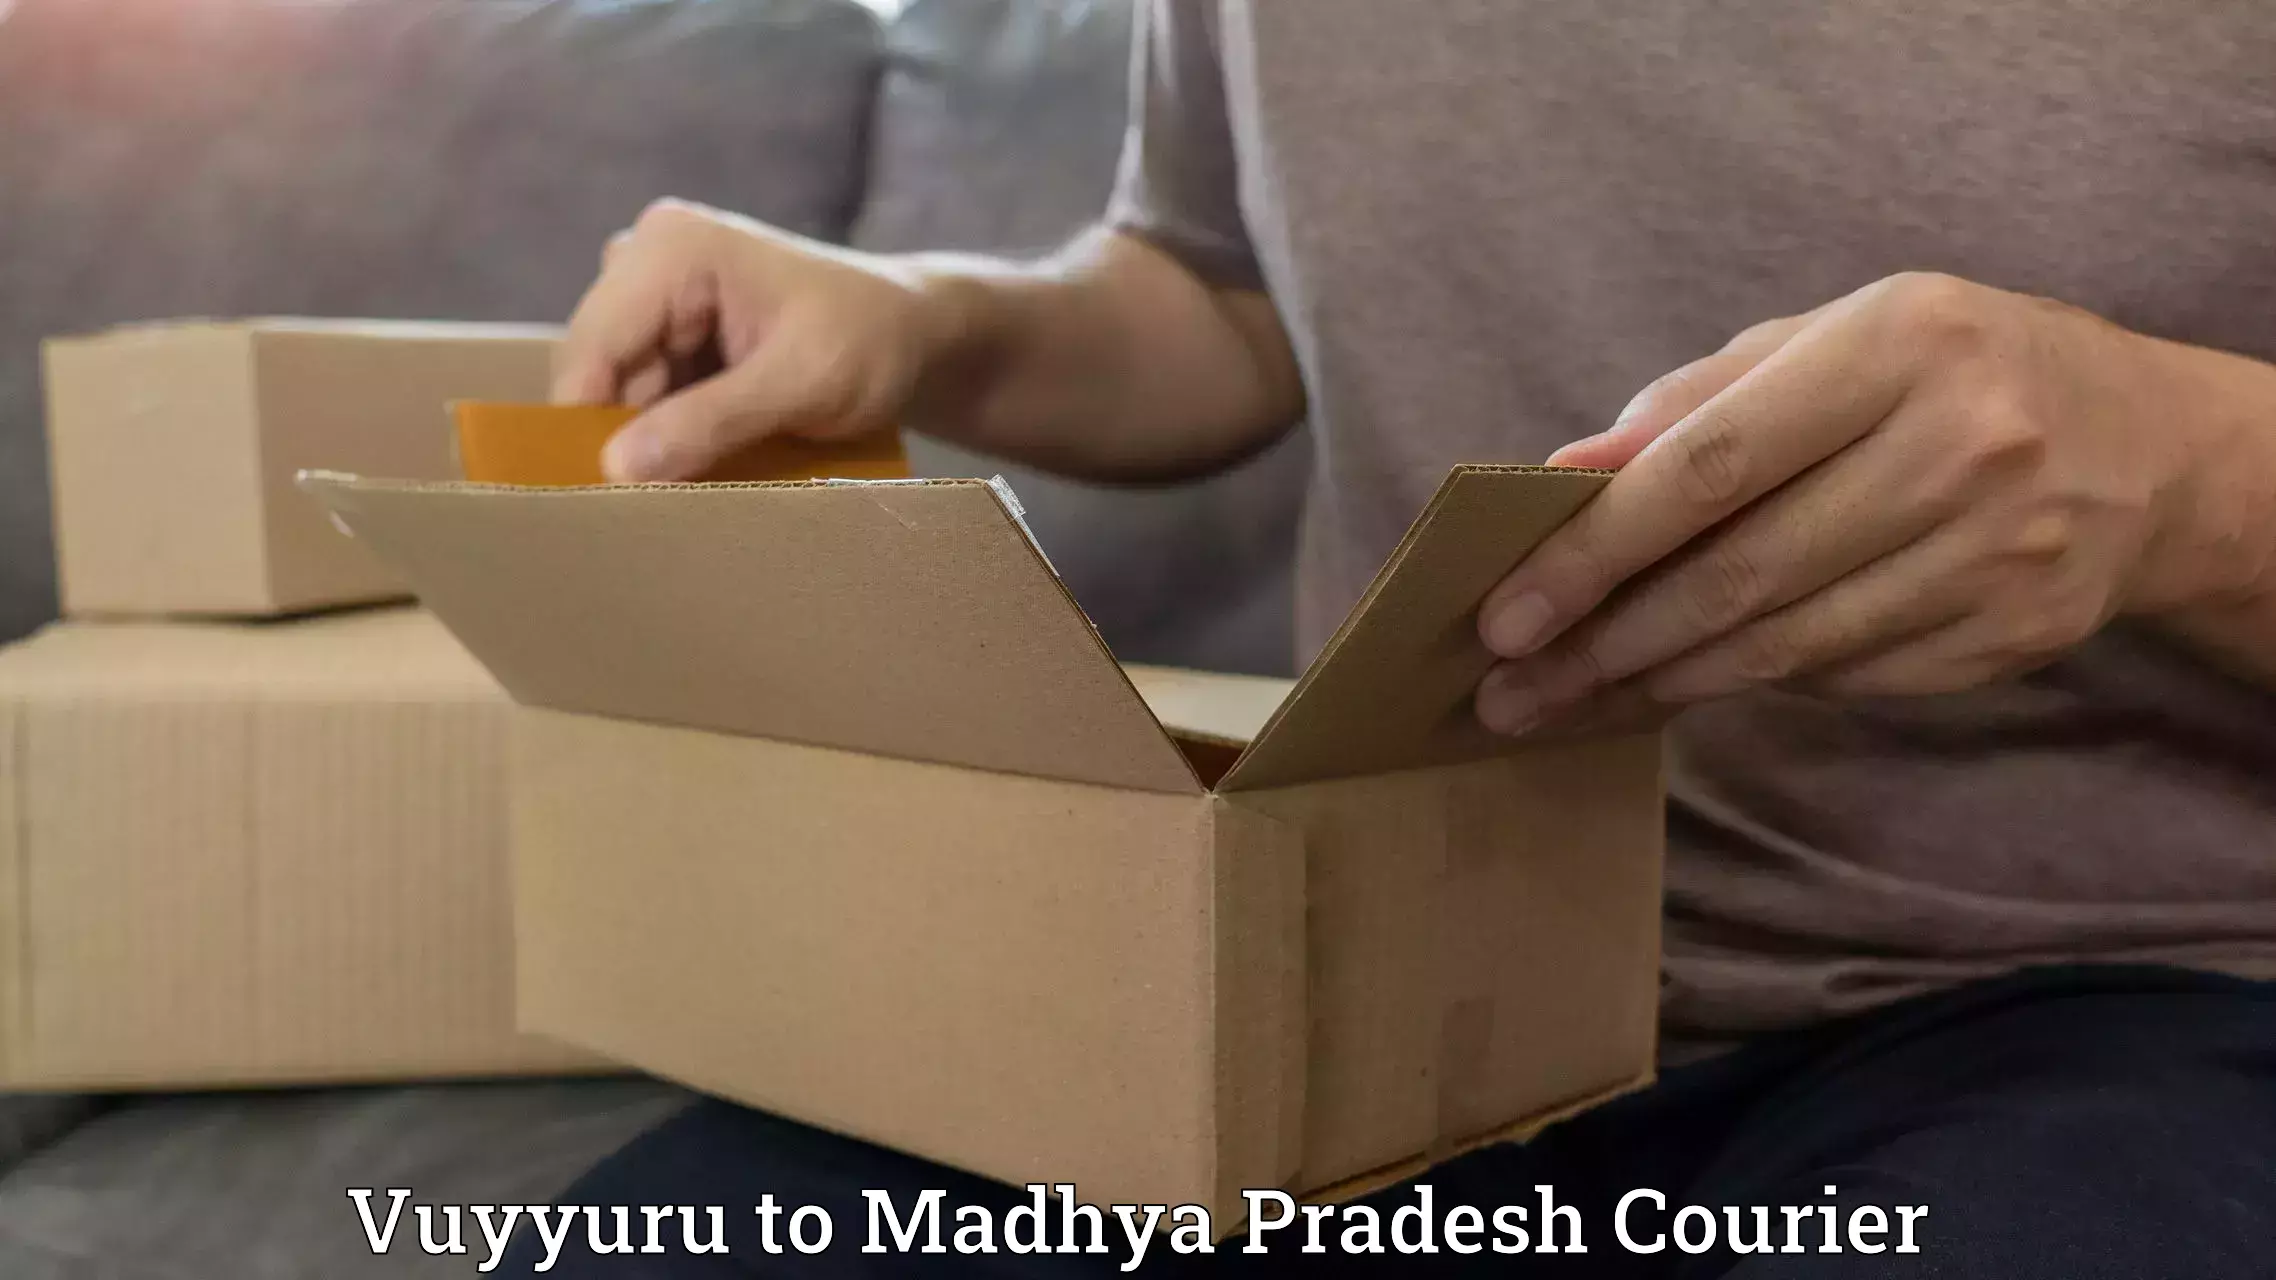 Courier insurance Vuyyuru to Madhya Pradesh